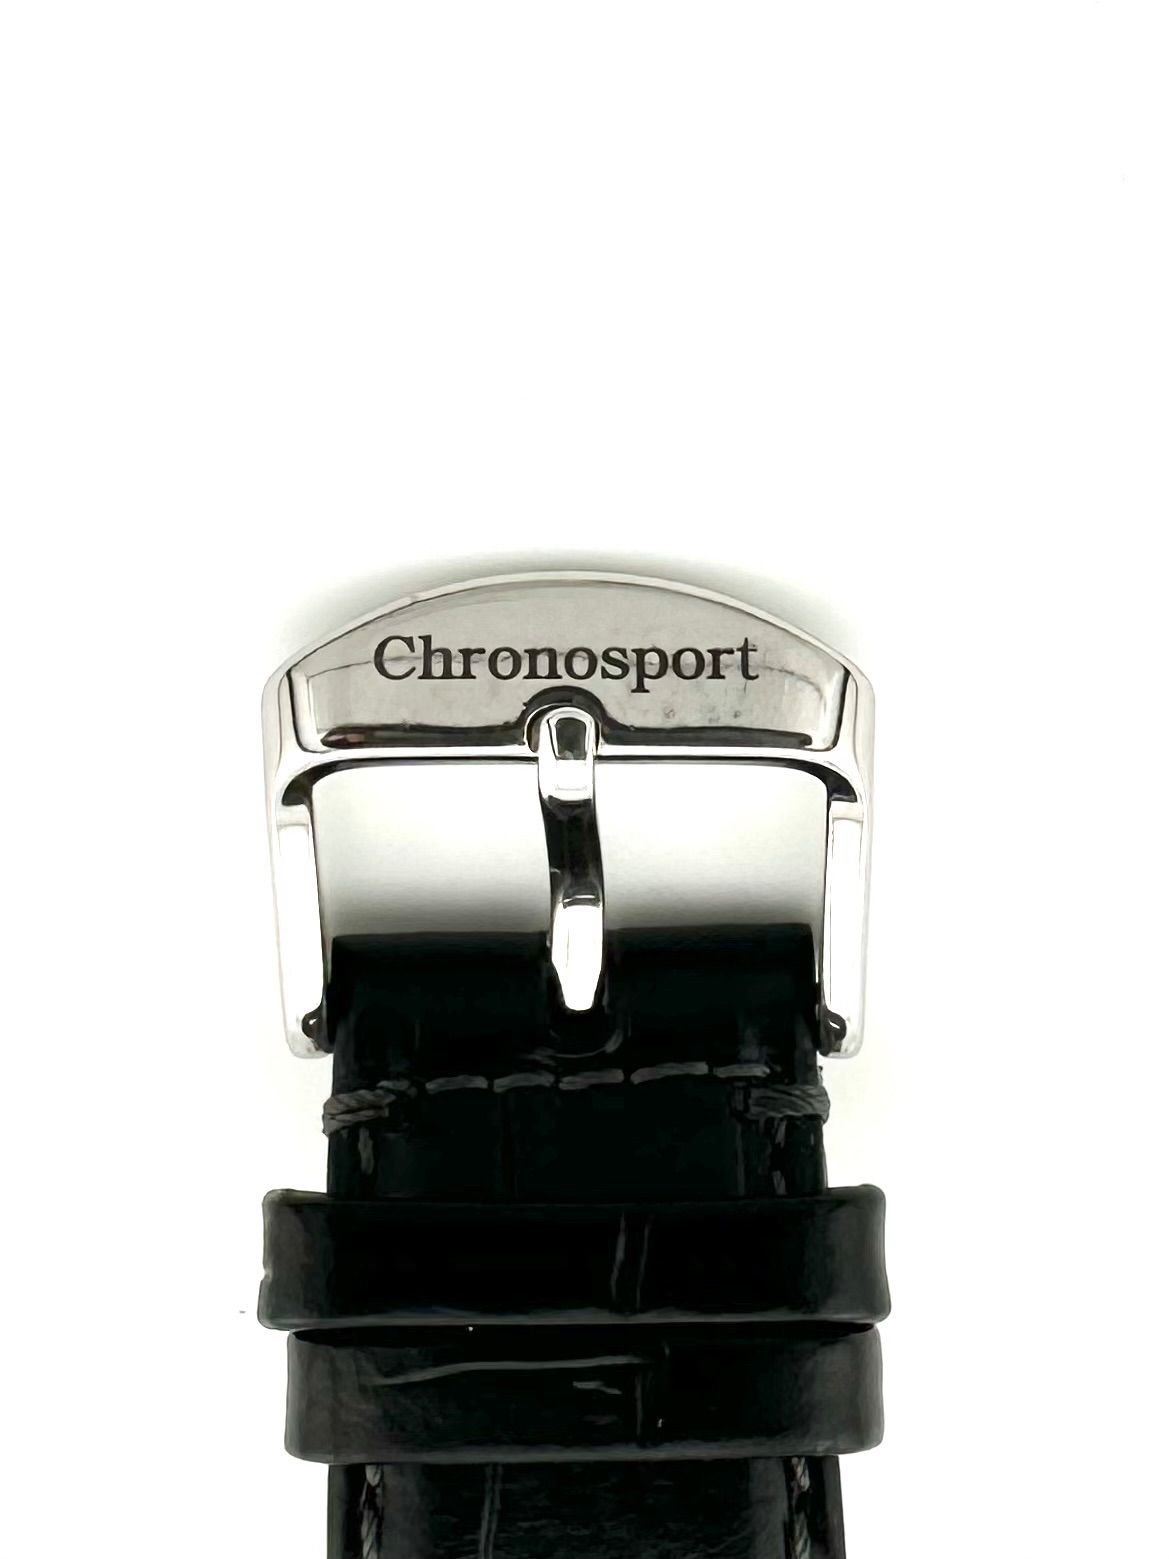 CHRONOSPORT 31 HS-09 手巻き時計 クロノシュポルト ヘルムート ジン 